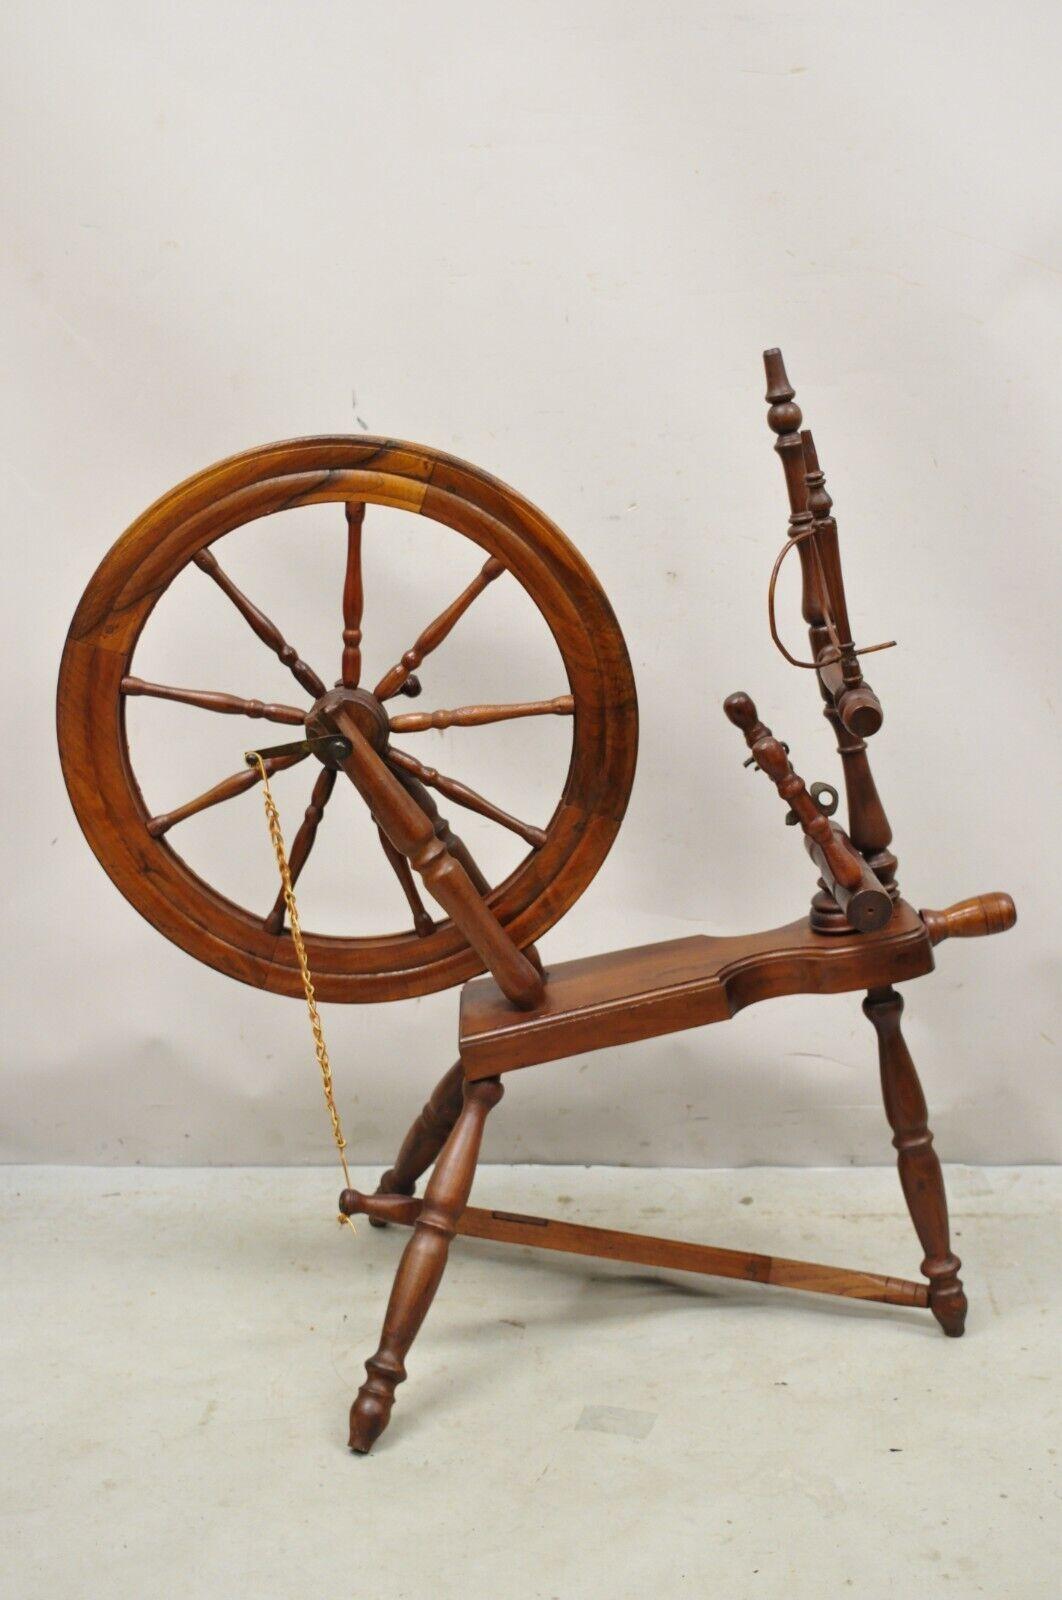 Ancien rouet canadien primitif en bois Coloni. L'article comprend un rouet de 22